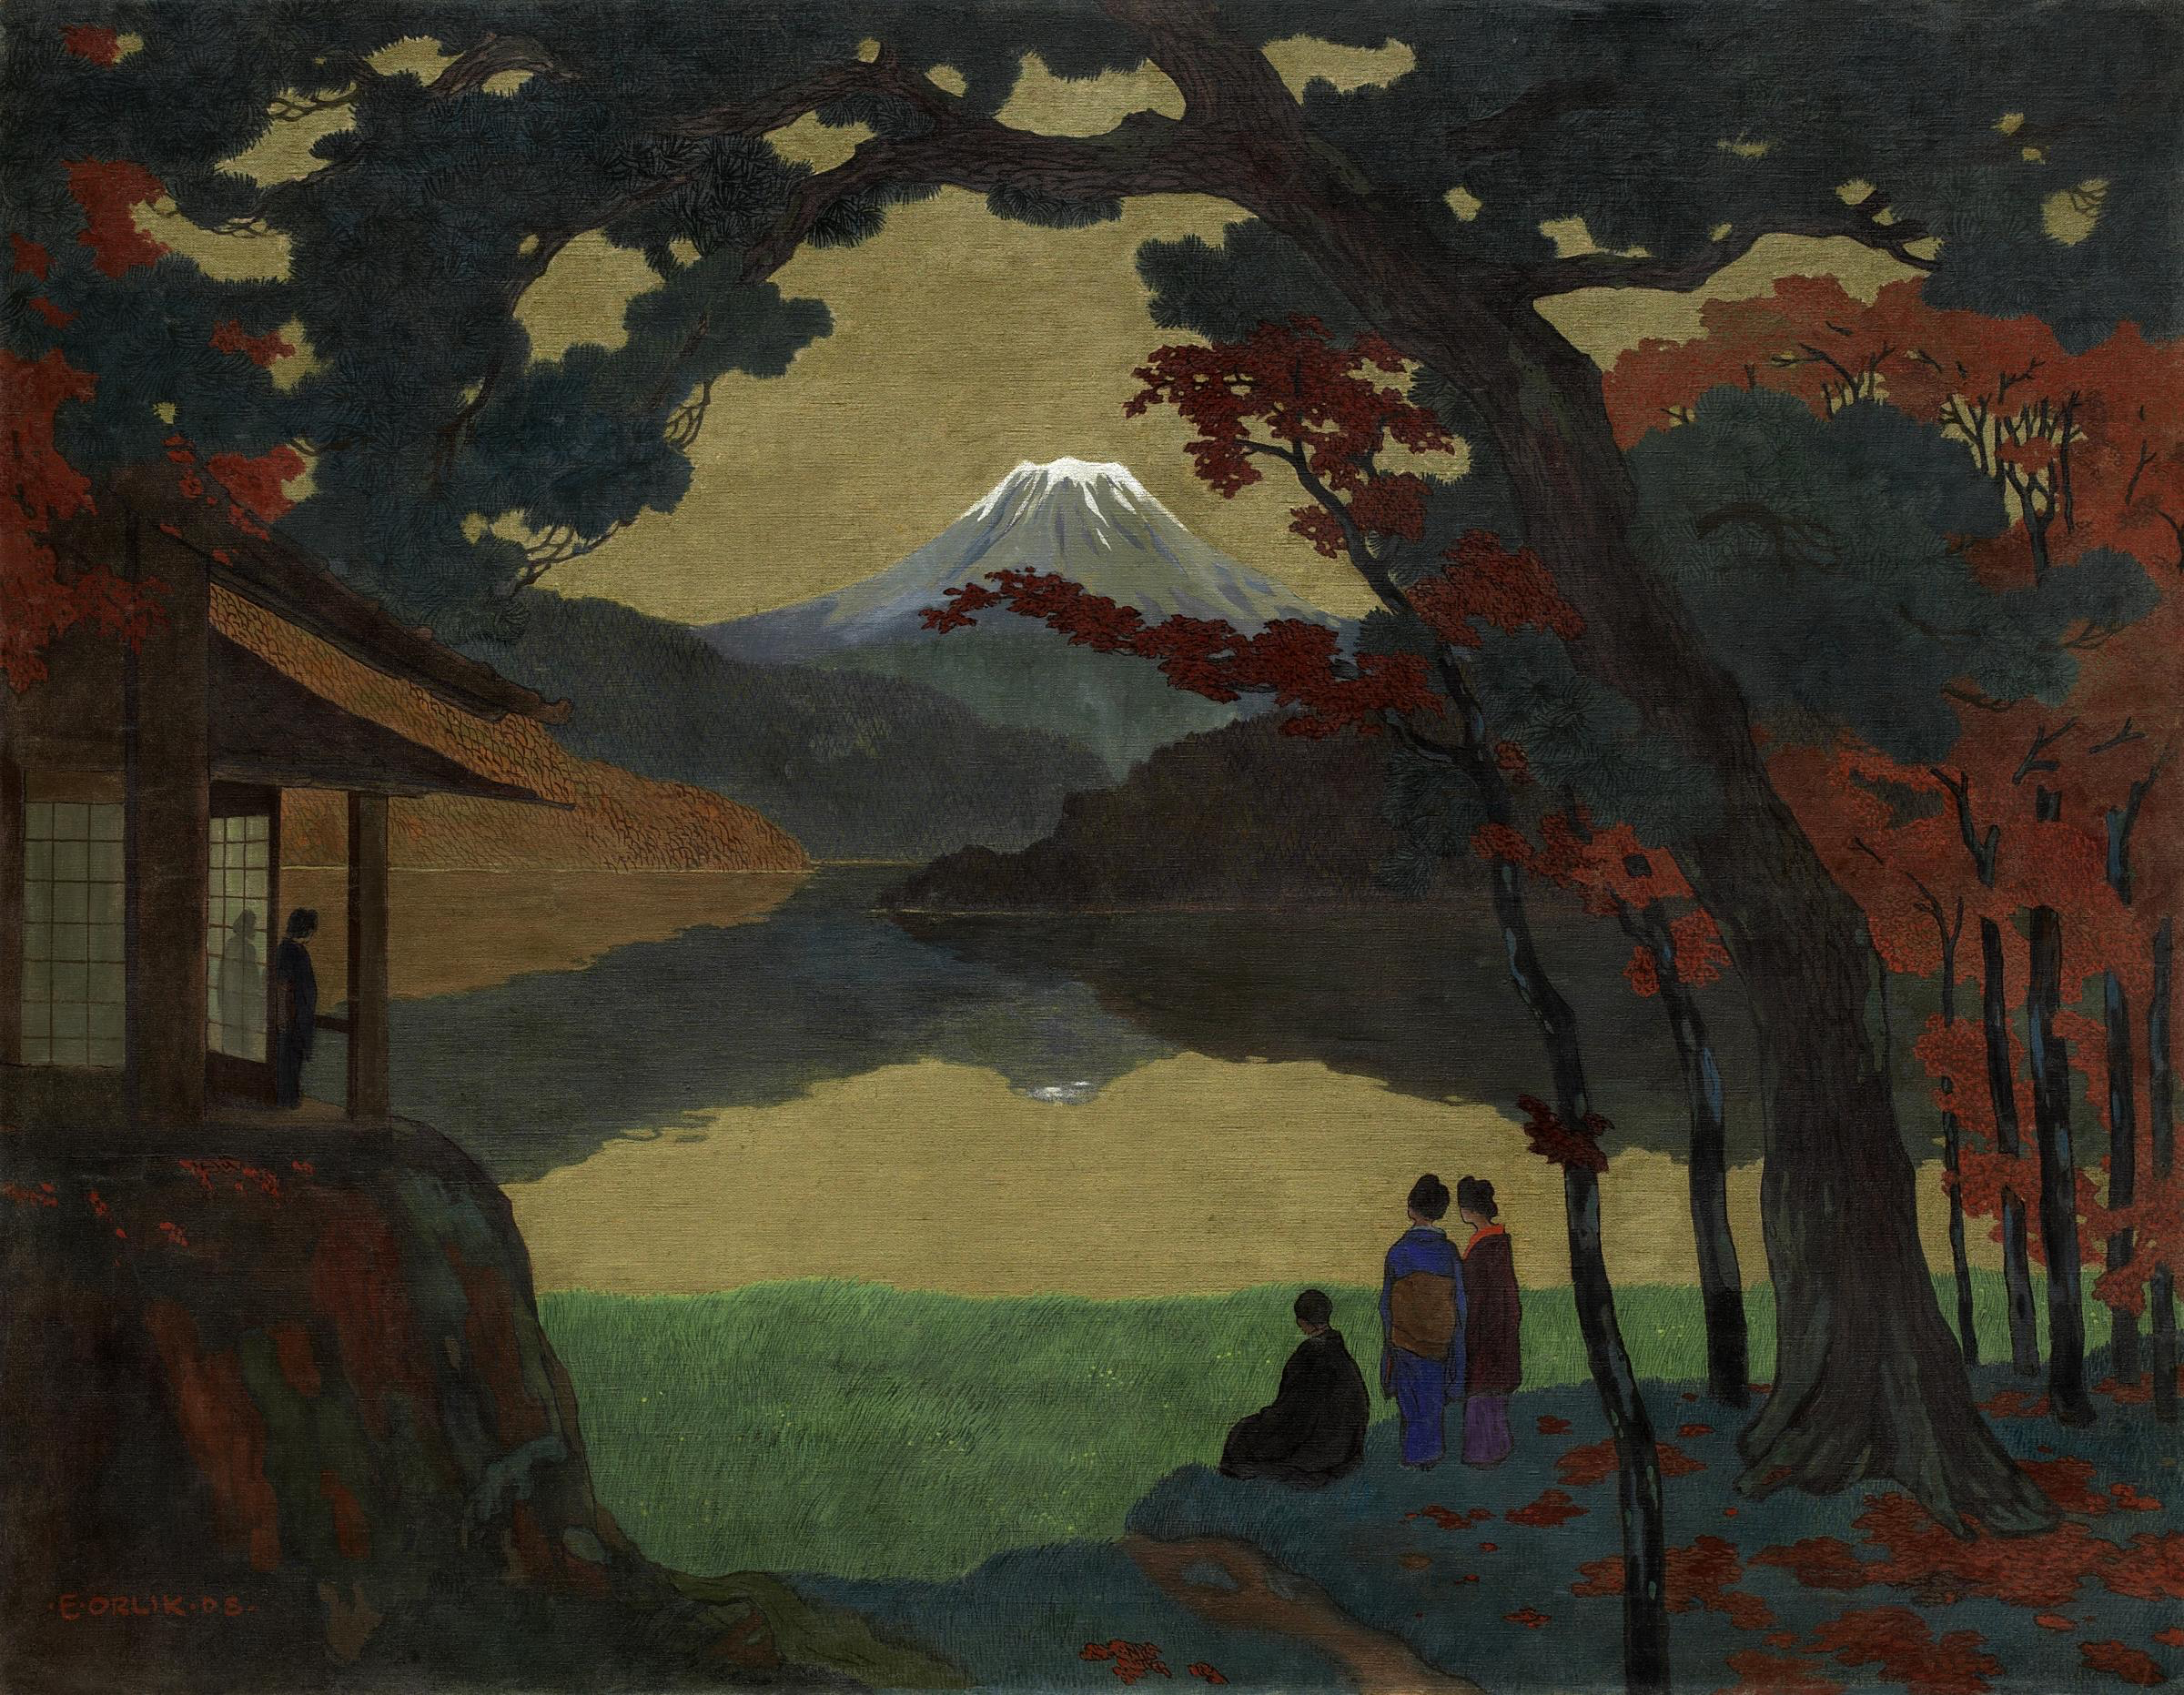 Paesaggio con il Monte Fuji sullo sfondo by Emil Orlik - 1908 - 120,5 x 154,5 cm collezione privata